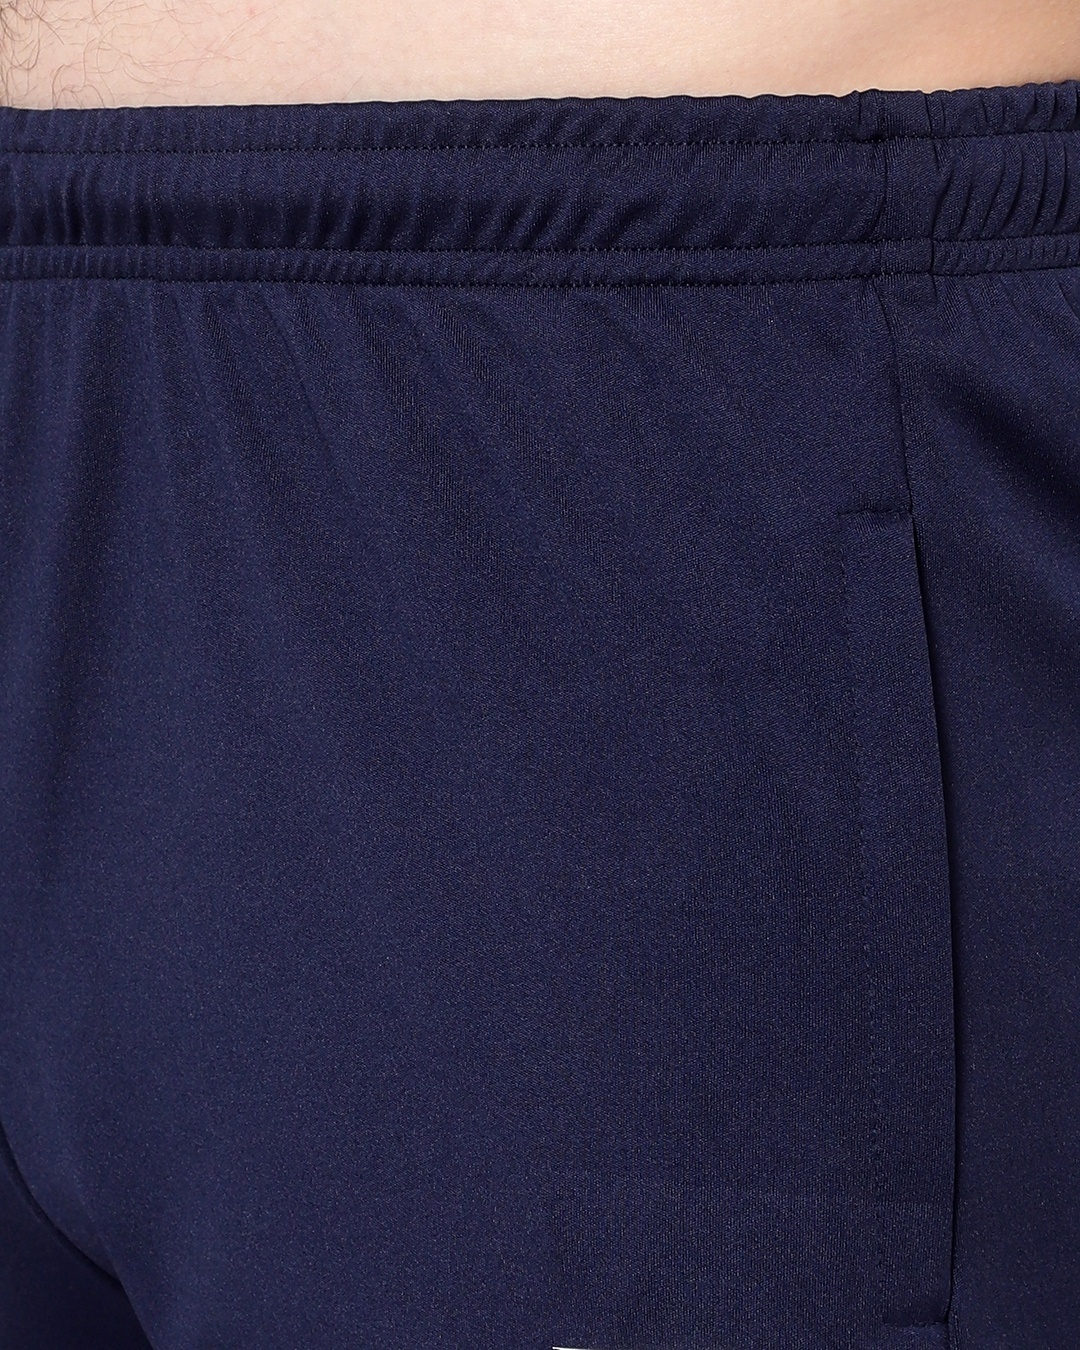 Shop Men's Blue Low-rise Shorts